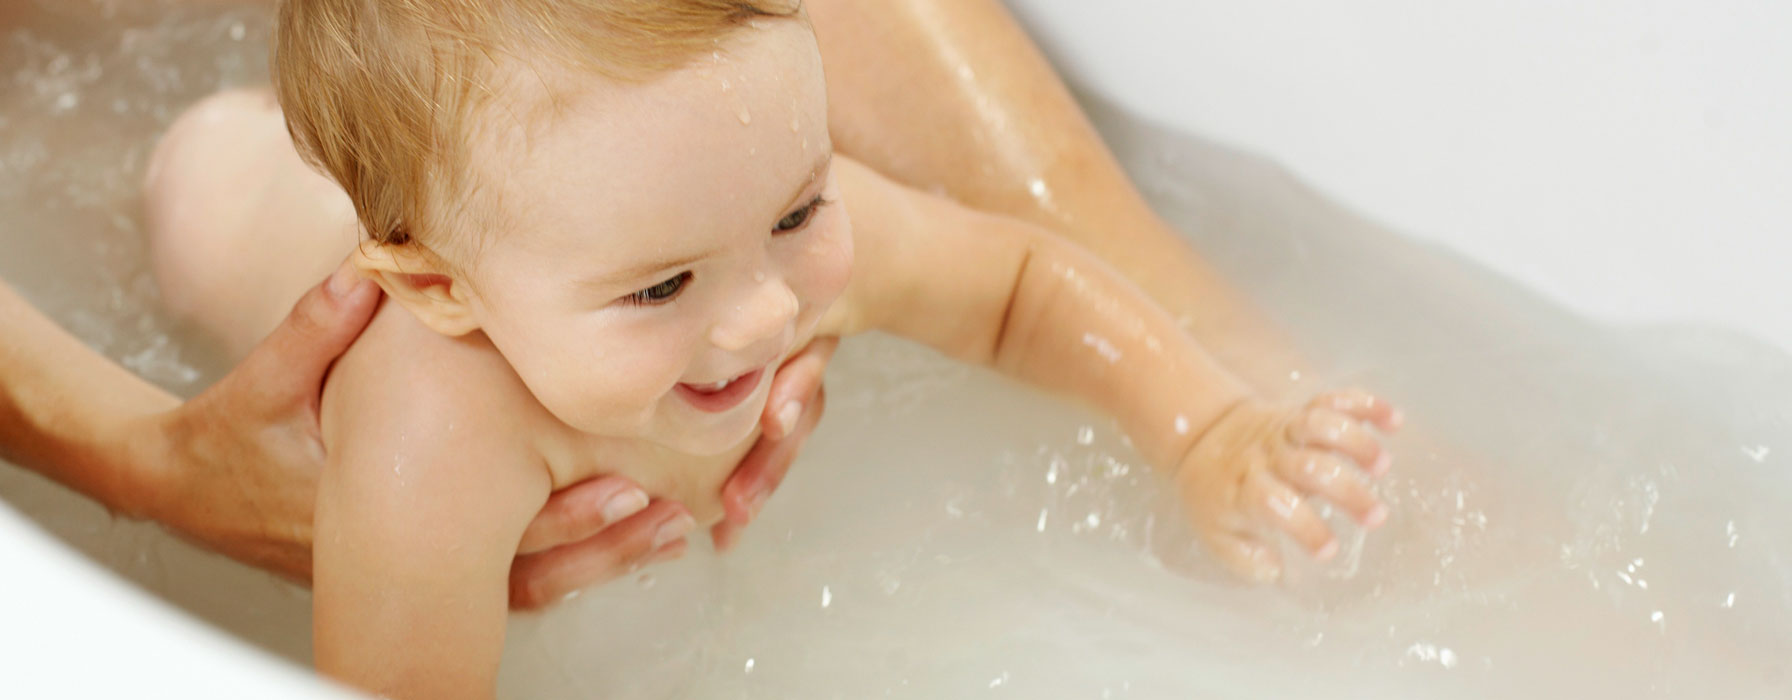 Coussin bébé bain - Santé Quotidien